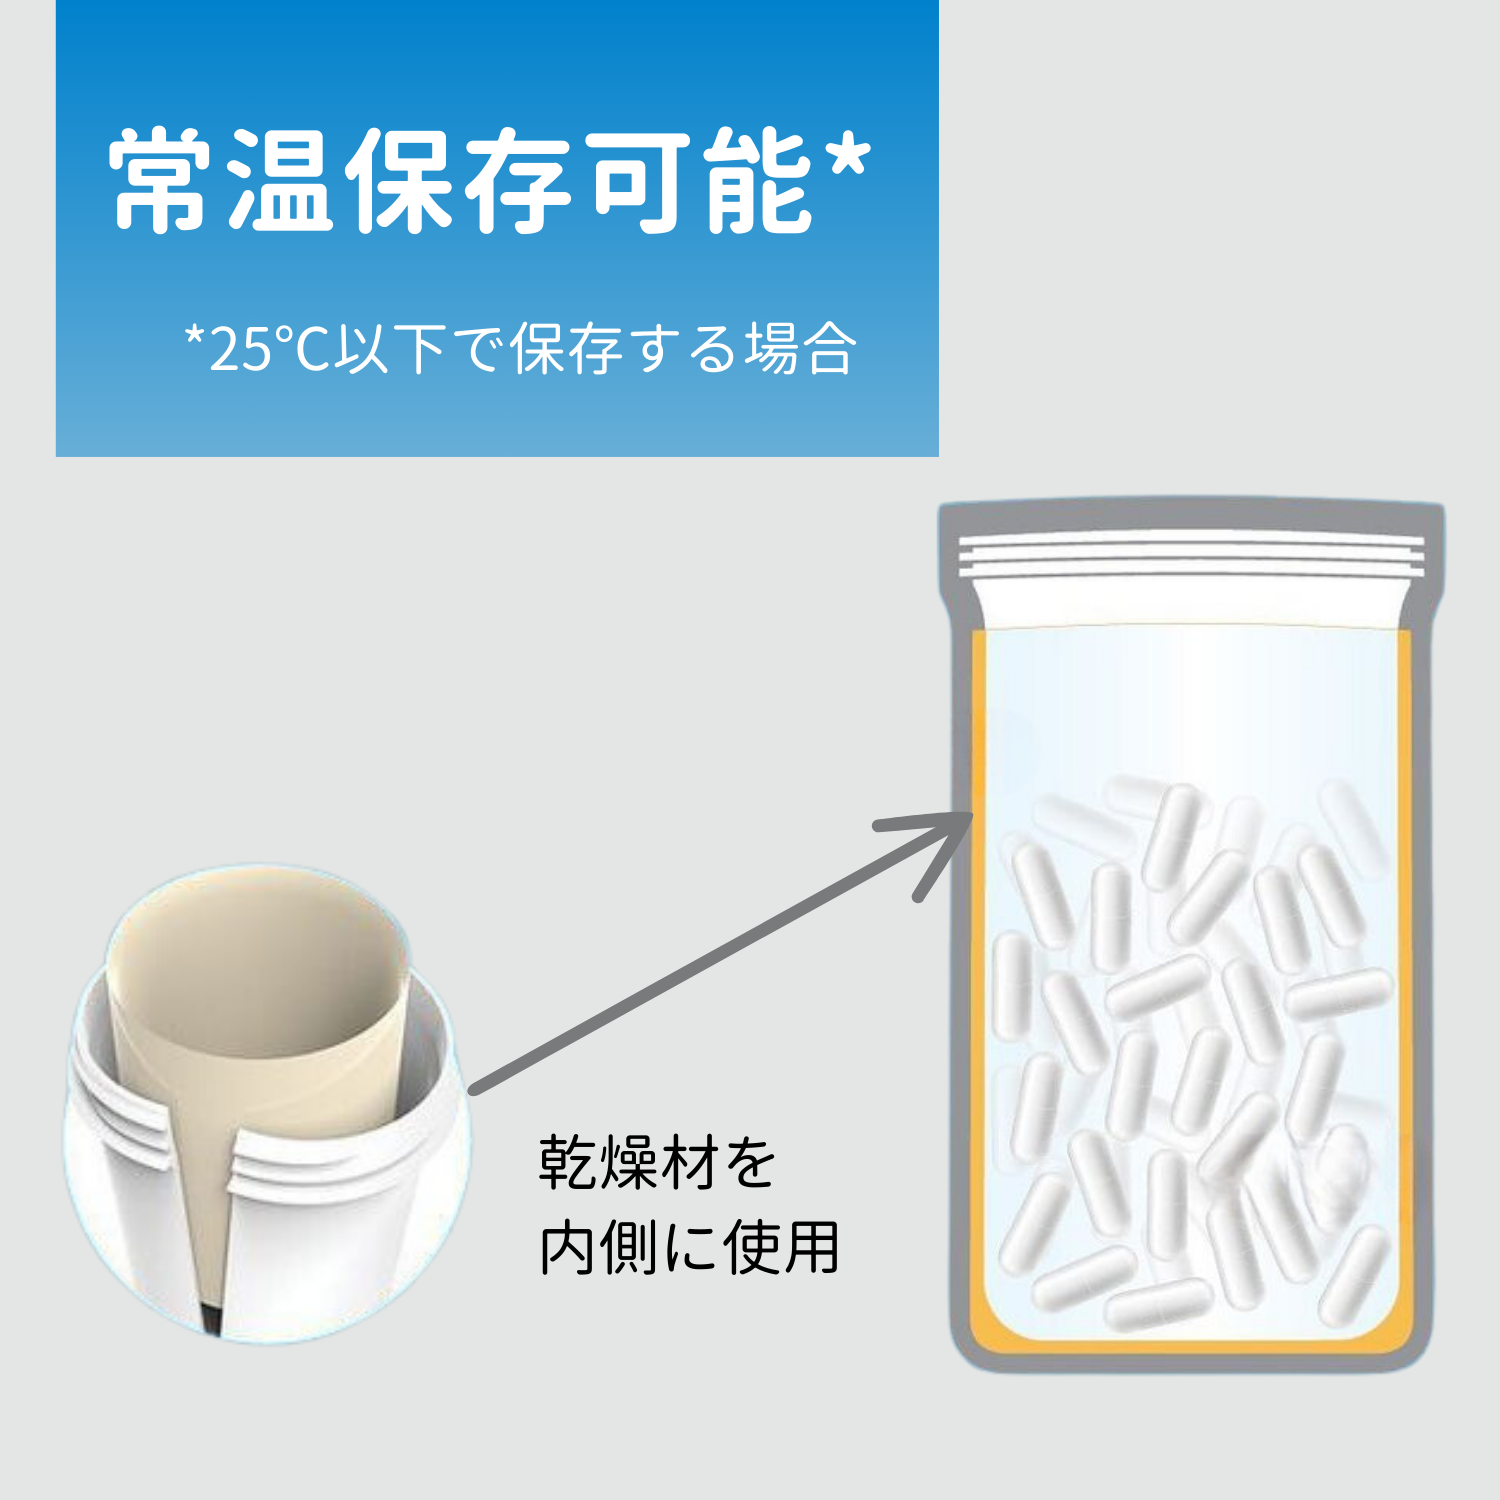 インナヘルス l 常温保存が可能な特殊容器を採用